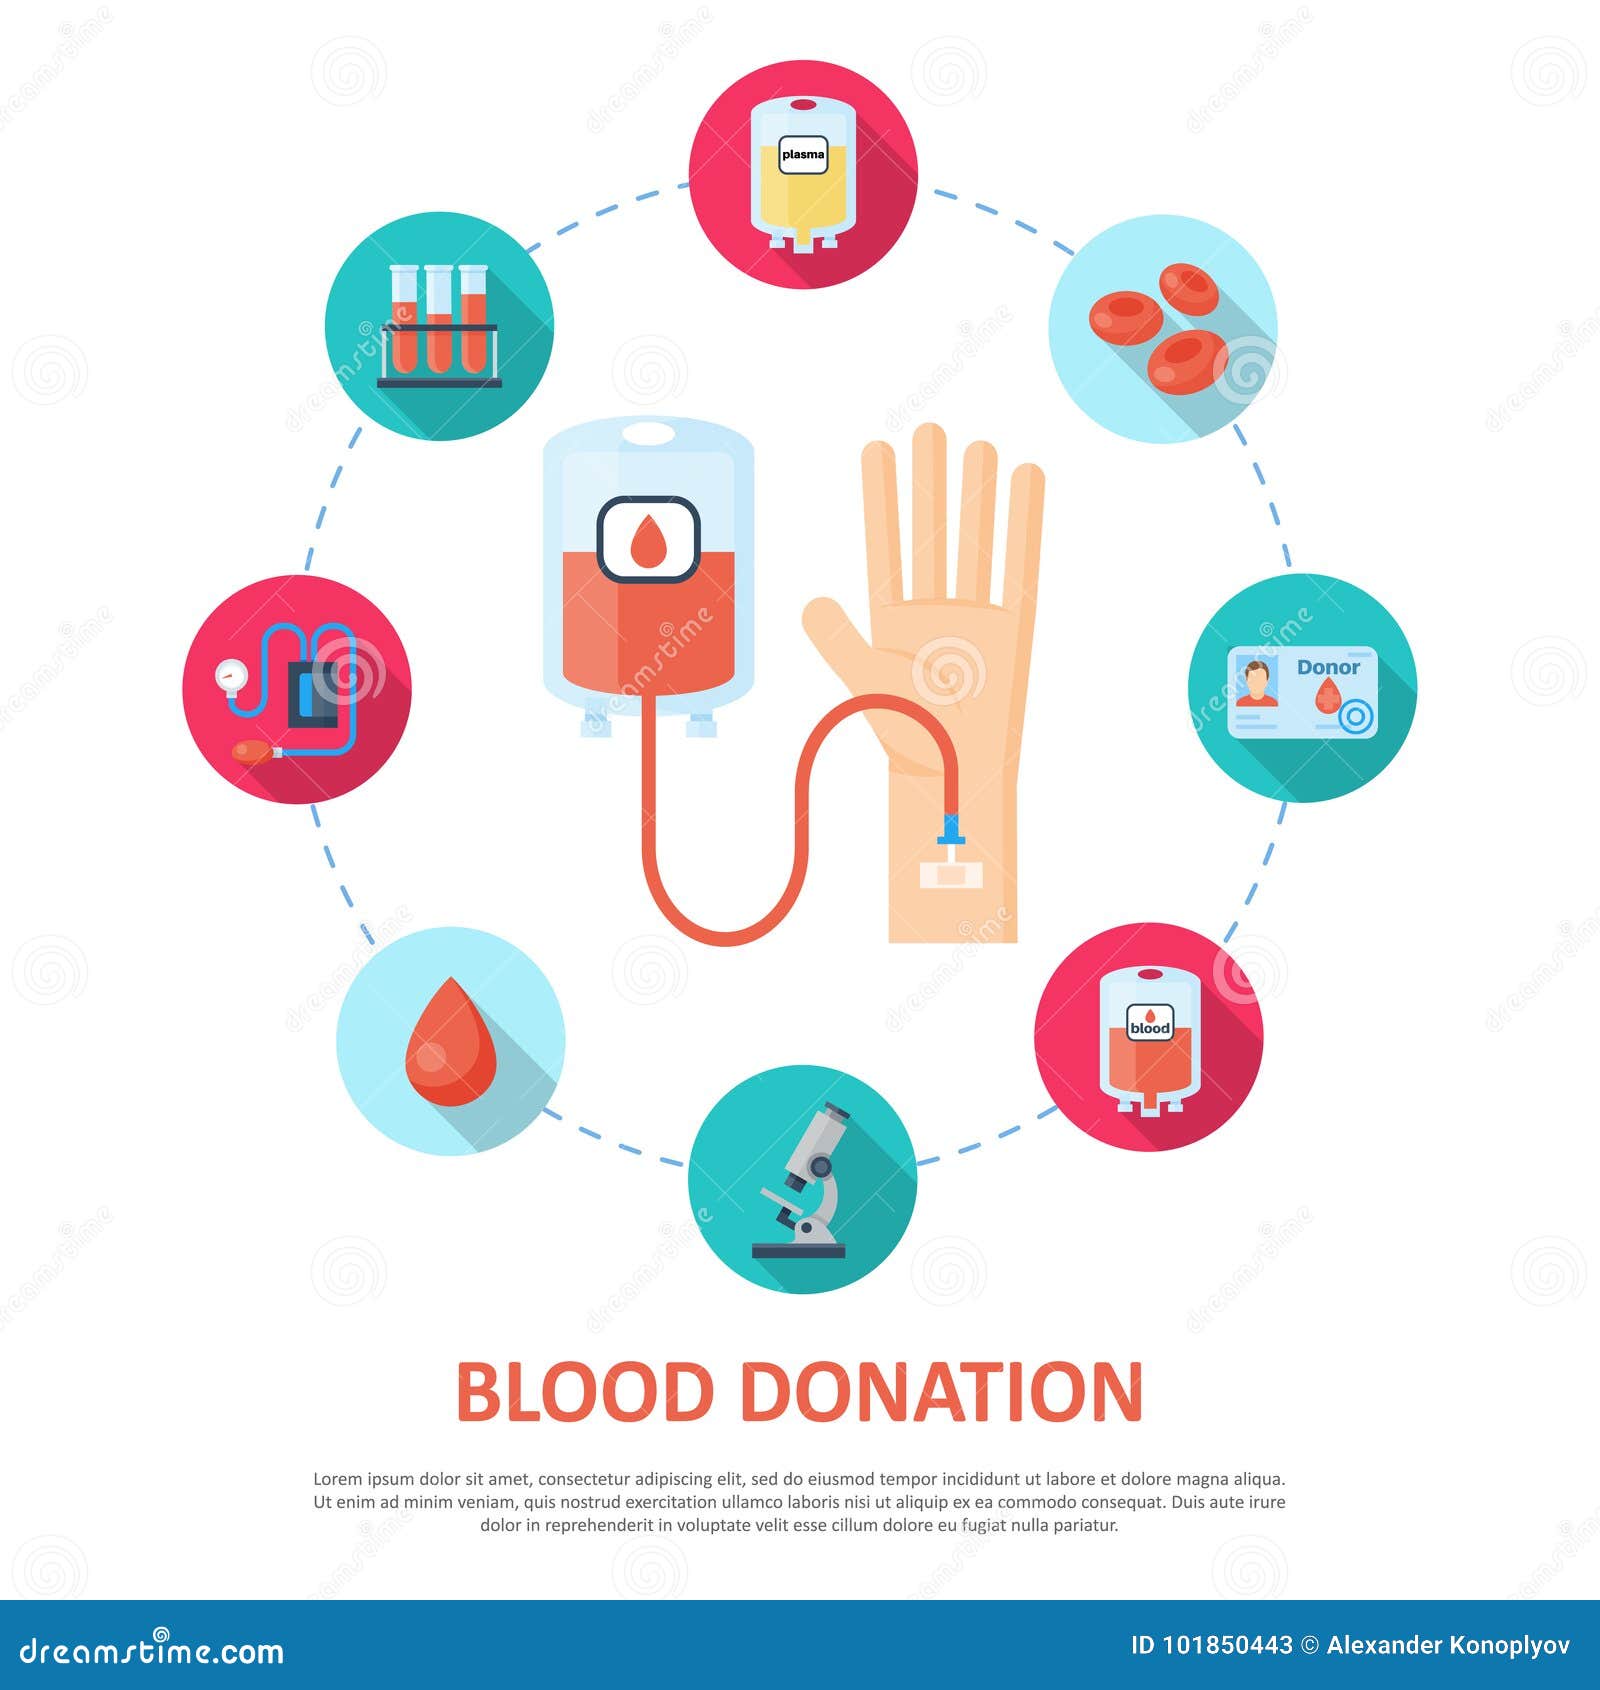 Рисунок на тему донорство крови. Донорство крови антибиотики. Инсульт и донорство крови. Миопия и донорство крови. Донор крови антибиотики